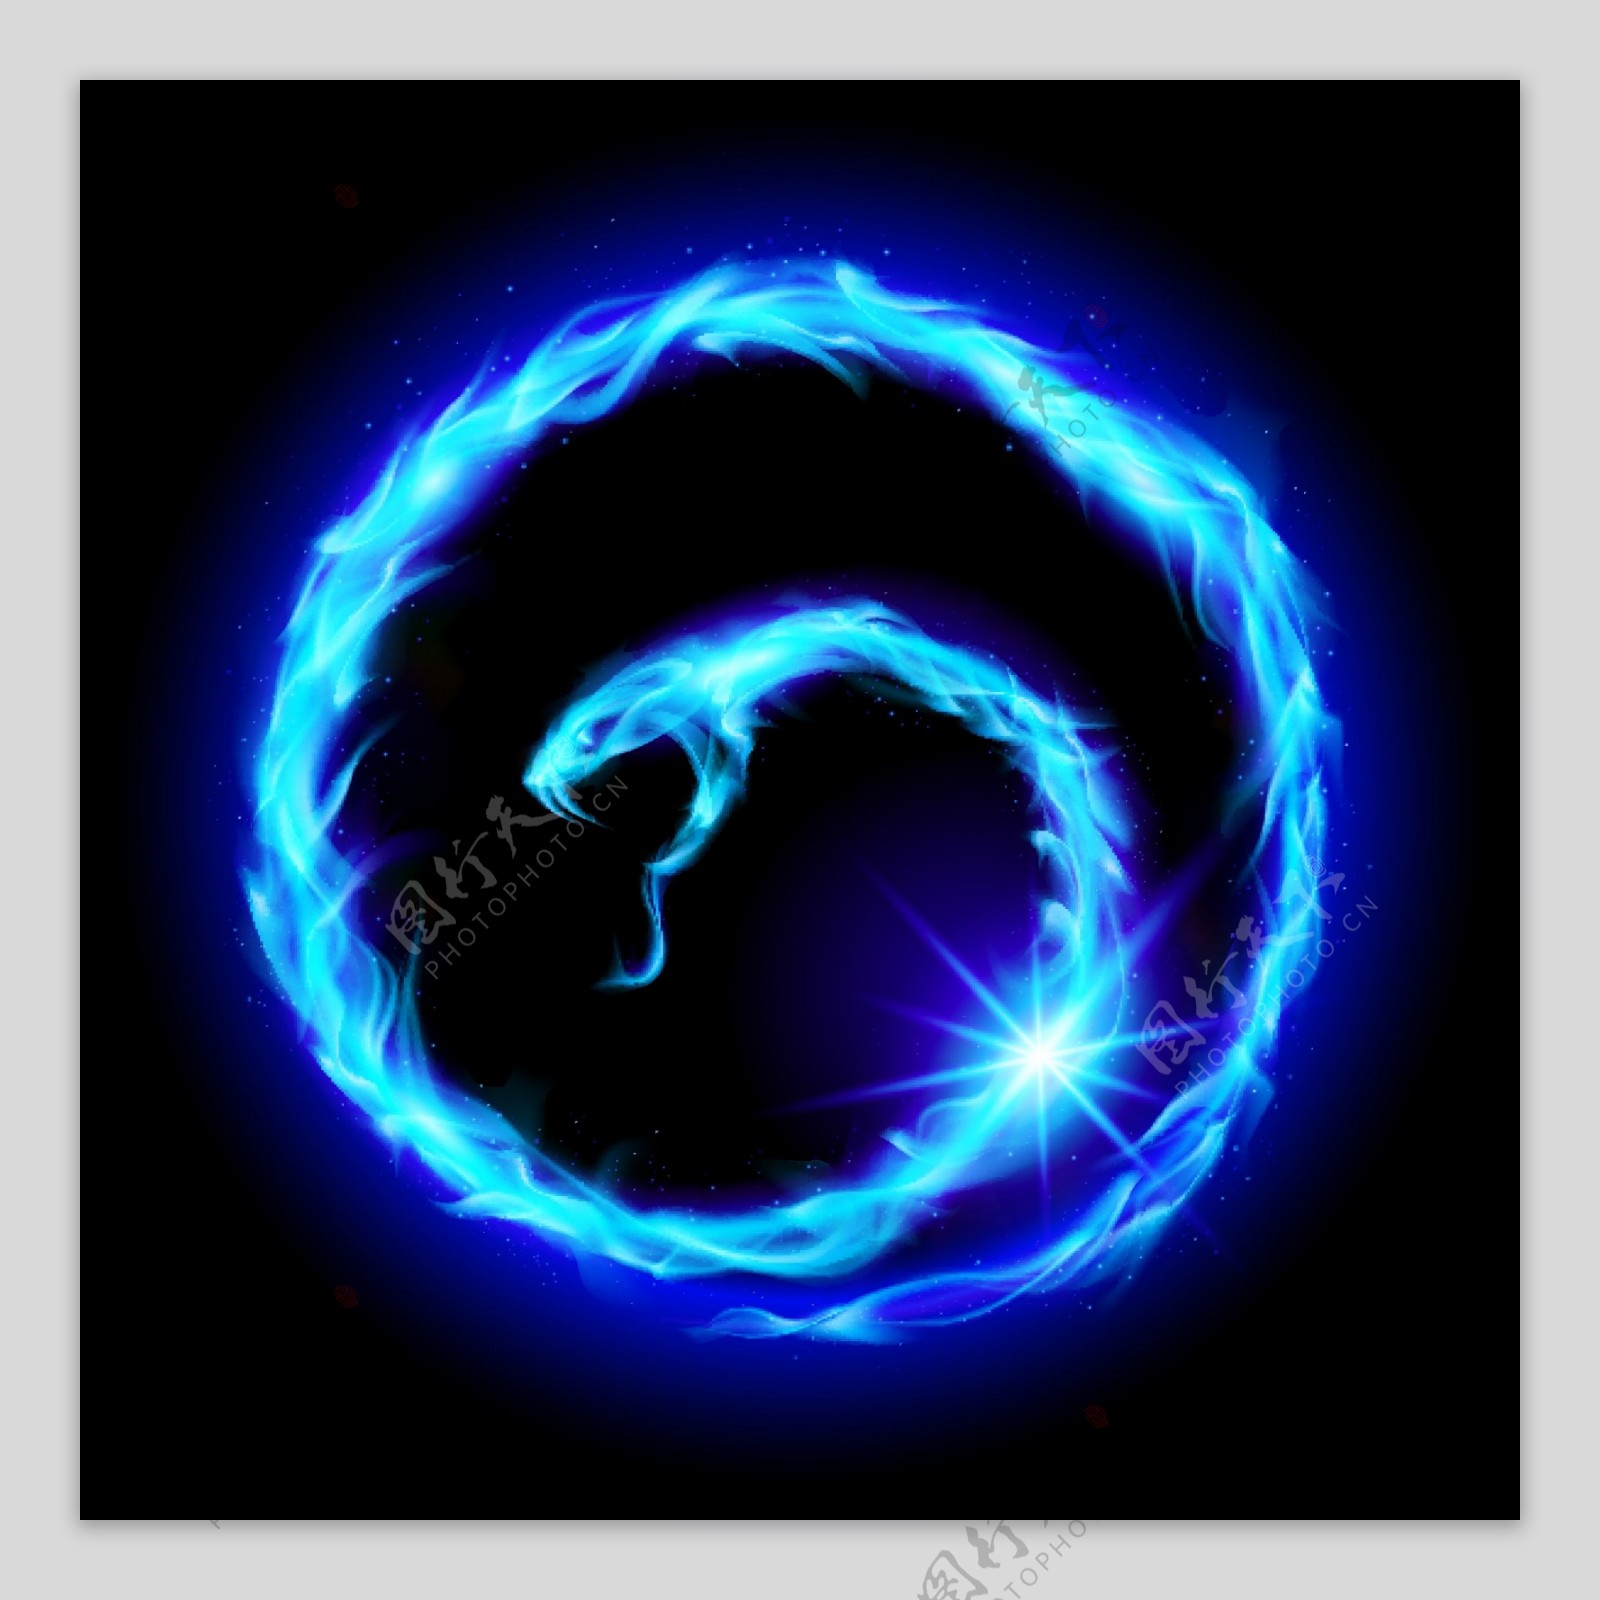 盘旋的蓝色火焰蛇图片